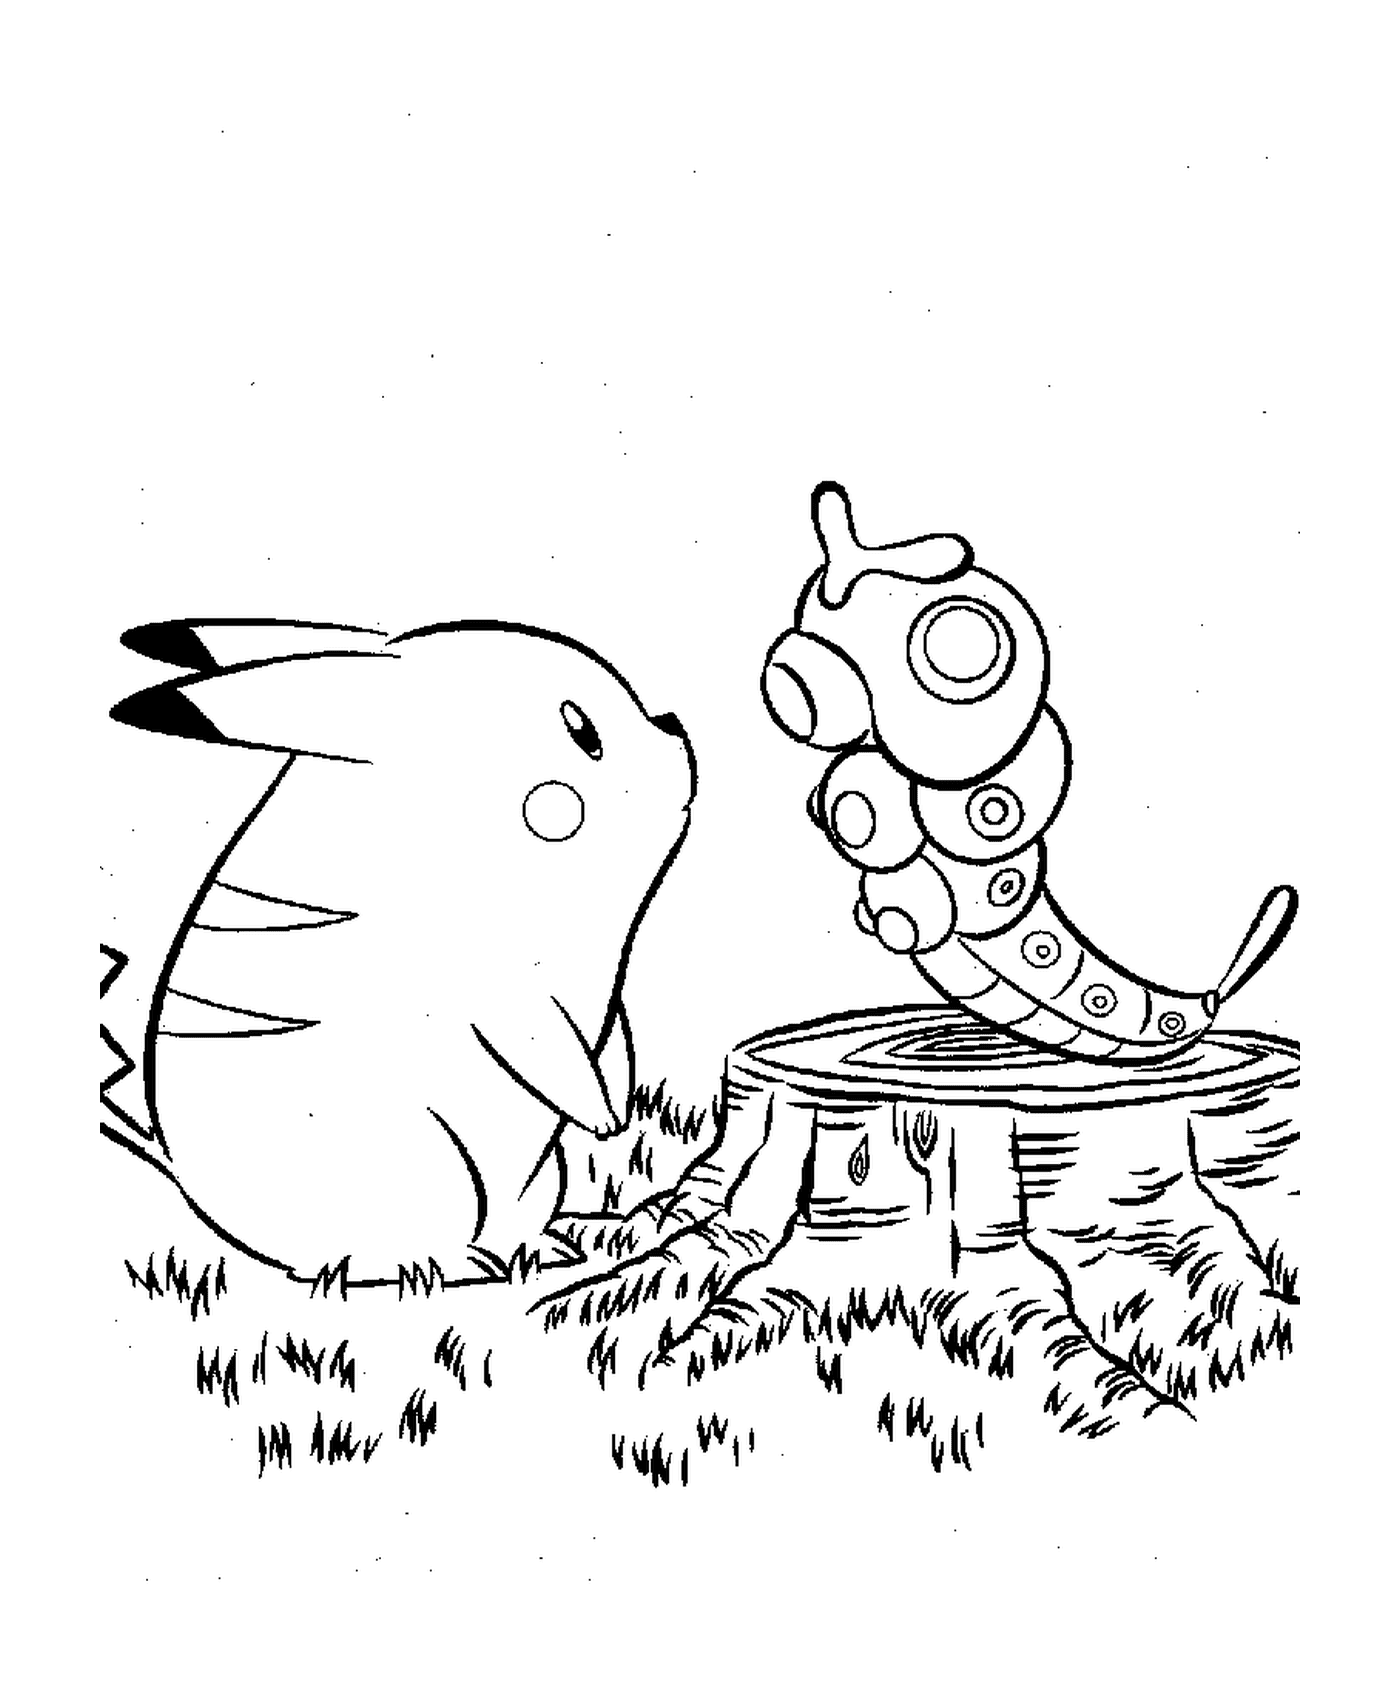   Pikachu accompagné d'un insecte 